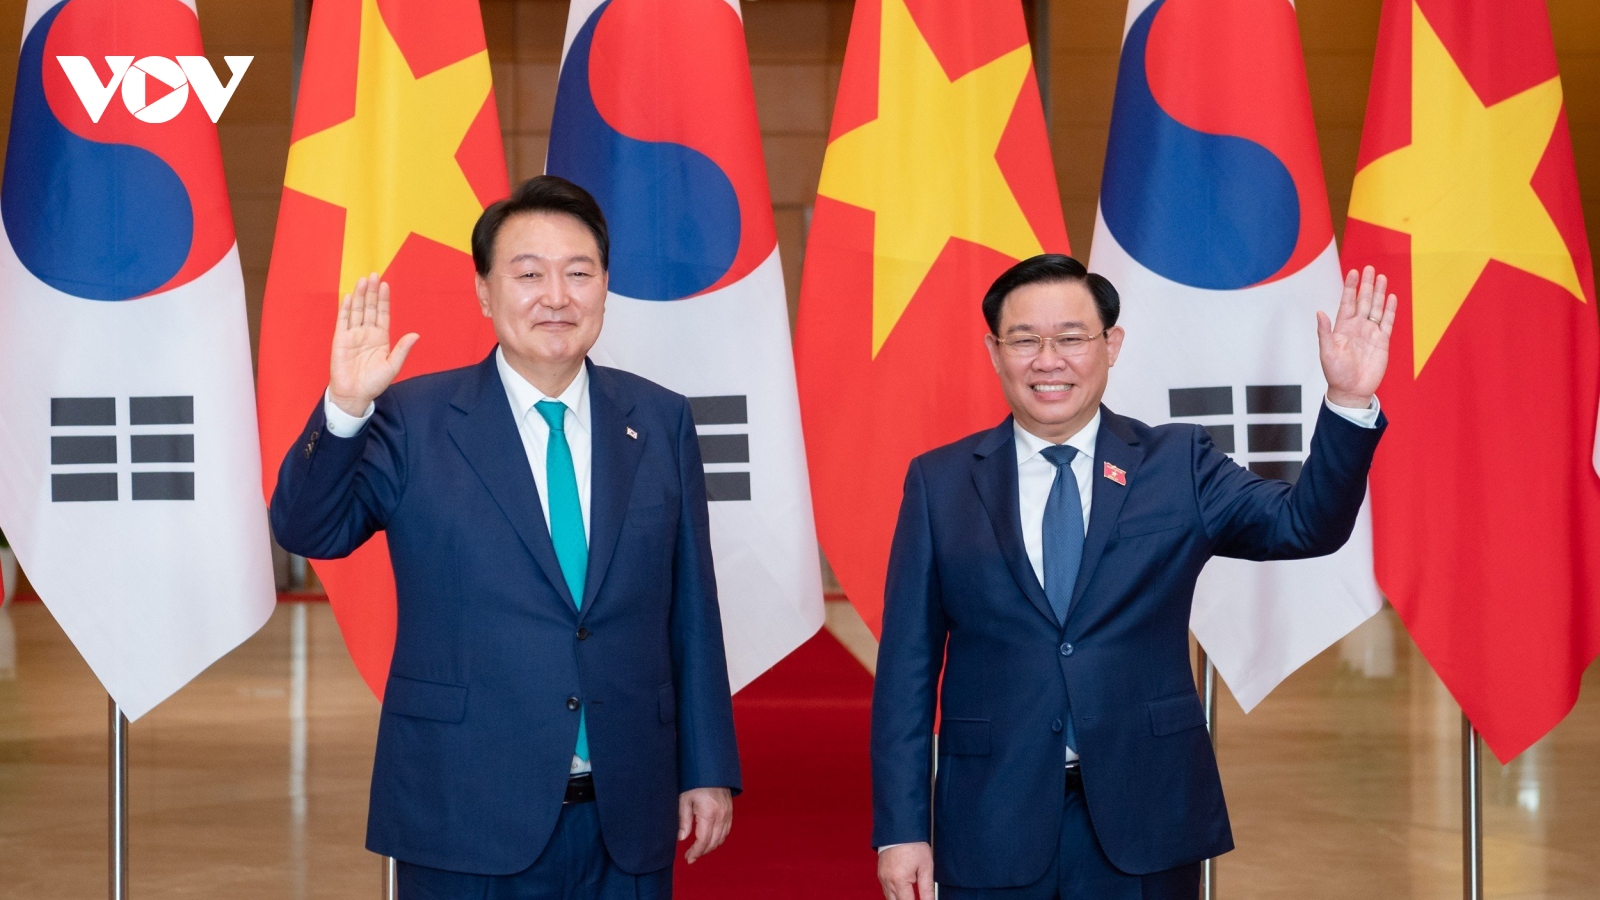 Hợp tác Quốc hội đóng vai trò quan trọng trong tổng thể hợp tác Việt Nam - Hàn Quốc